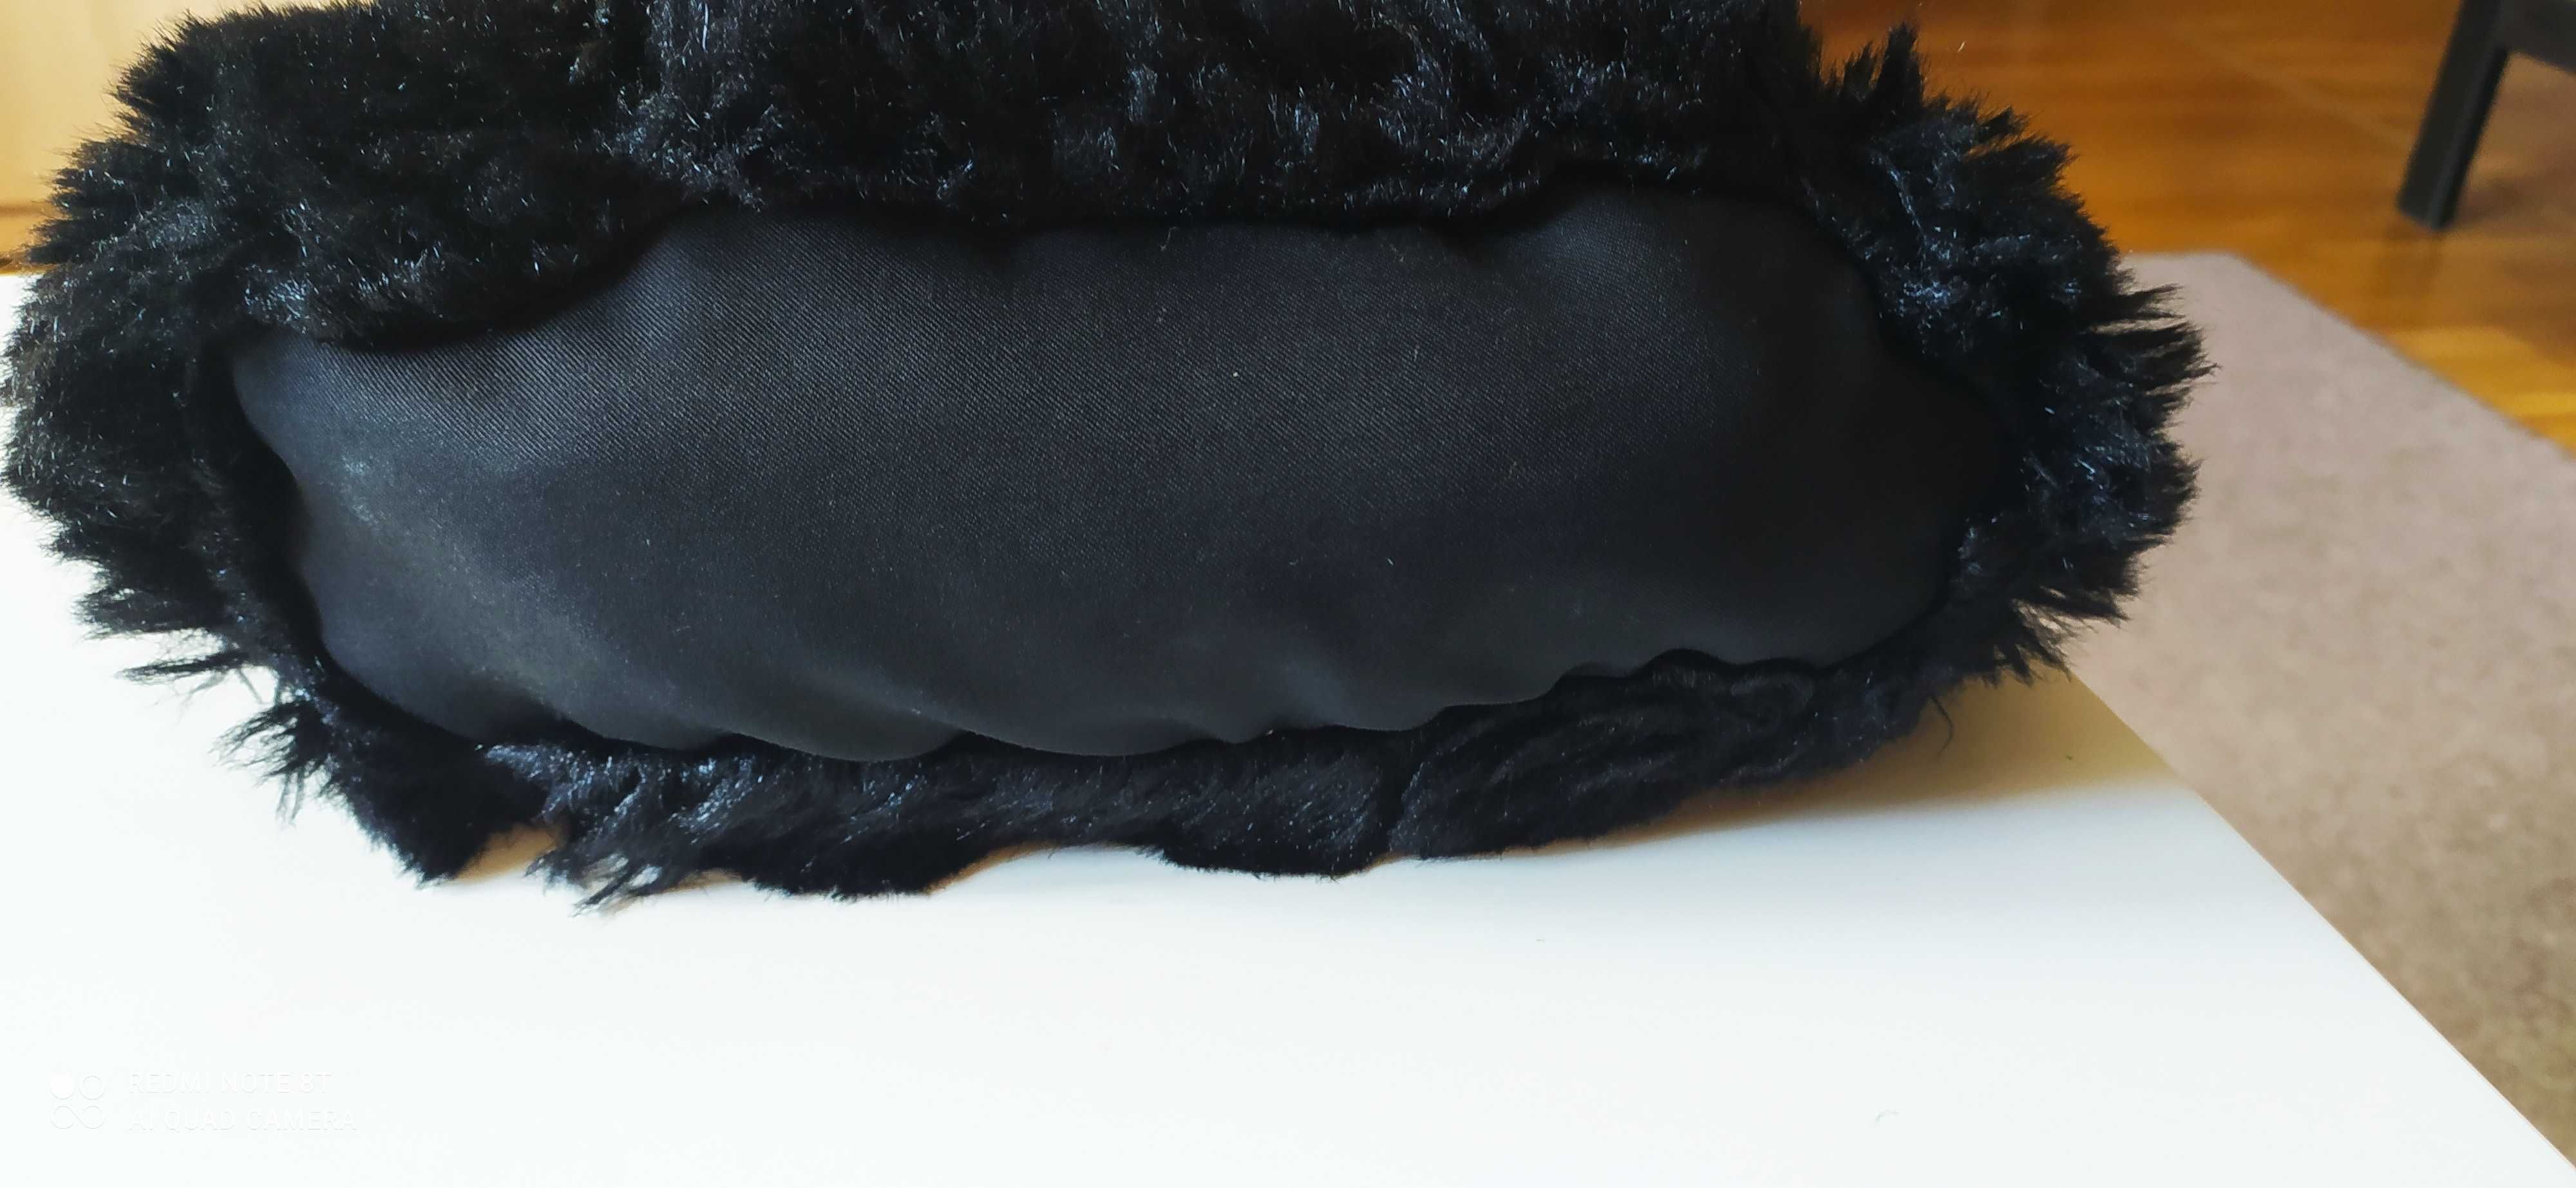 Materiał sztuczne futro jenot bordo długi włos, świetny wygląd